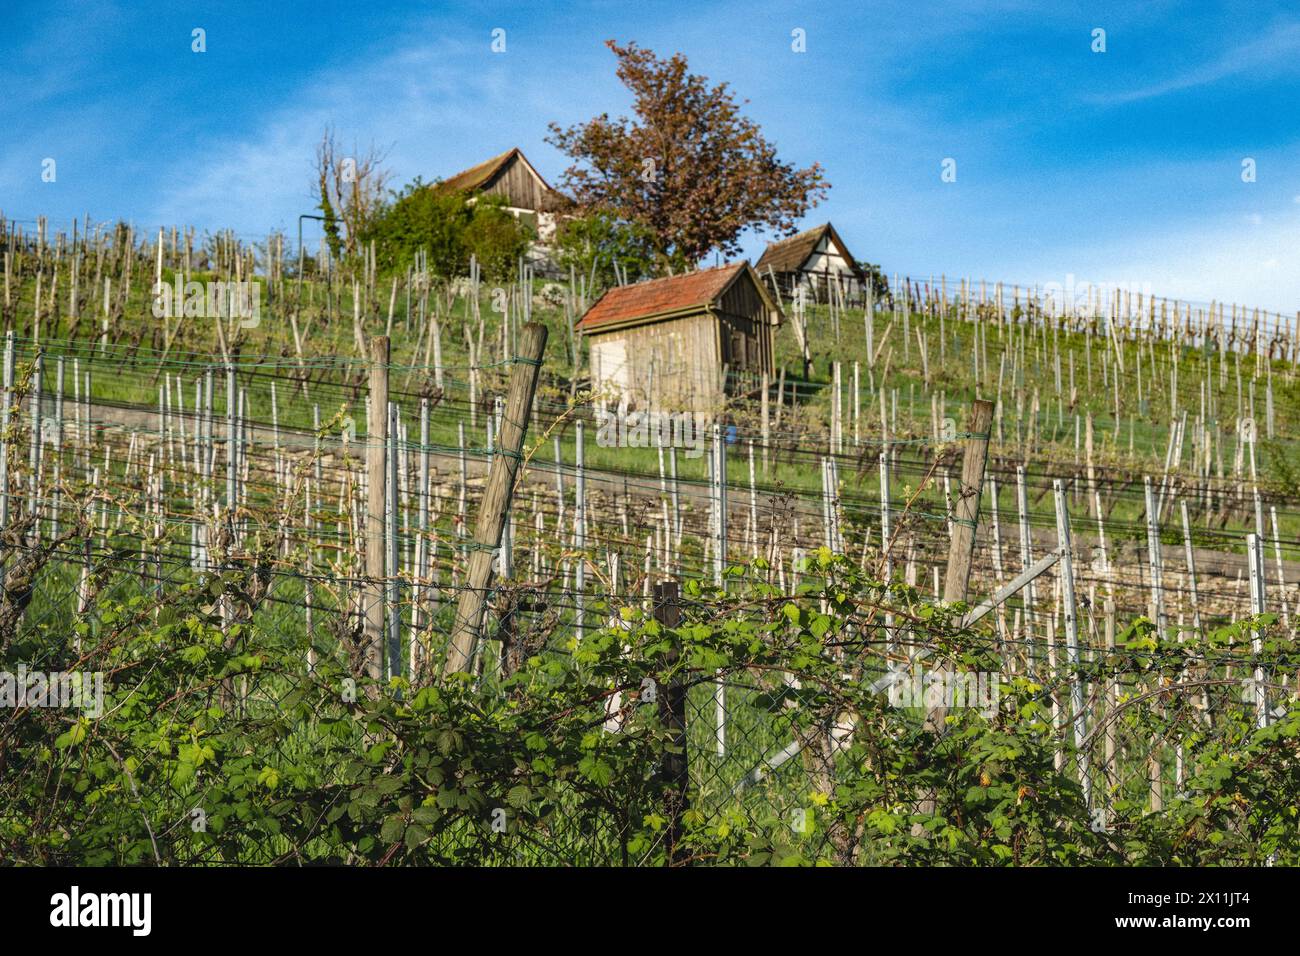 : Hütten im Weinberg - Blick über einen Zaun auf die grüne Natur in Süddeutschland. Stockfoto